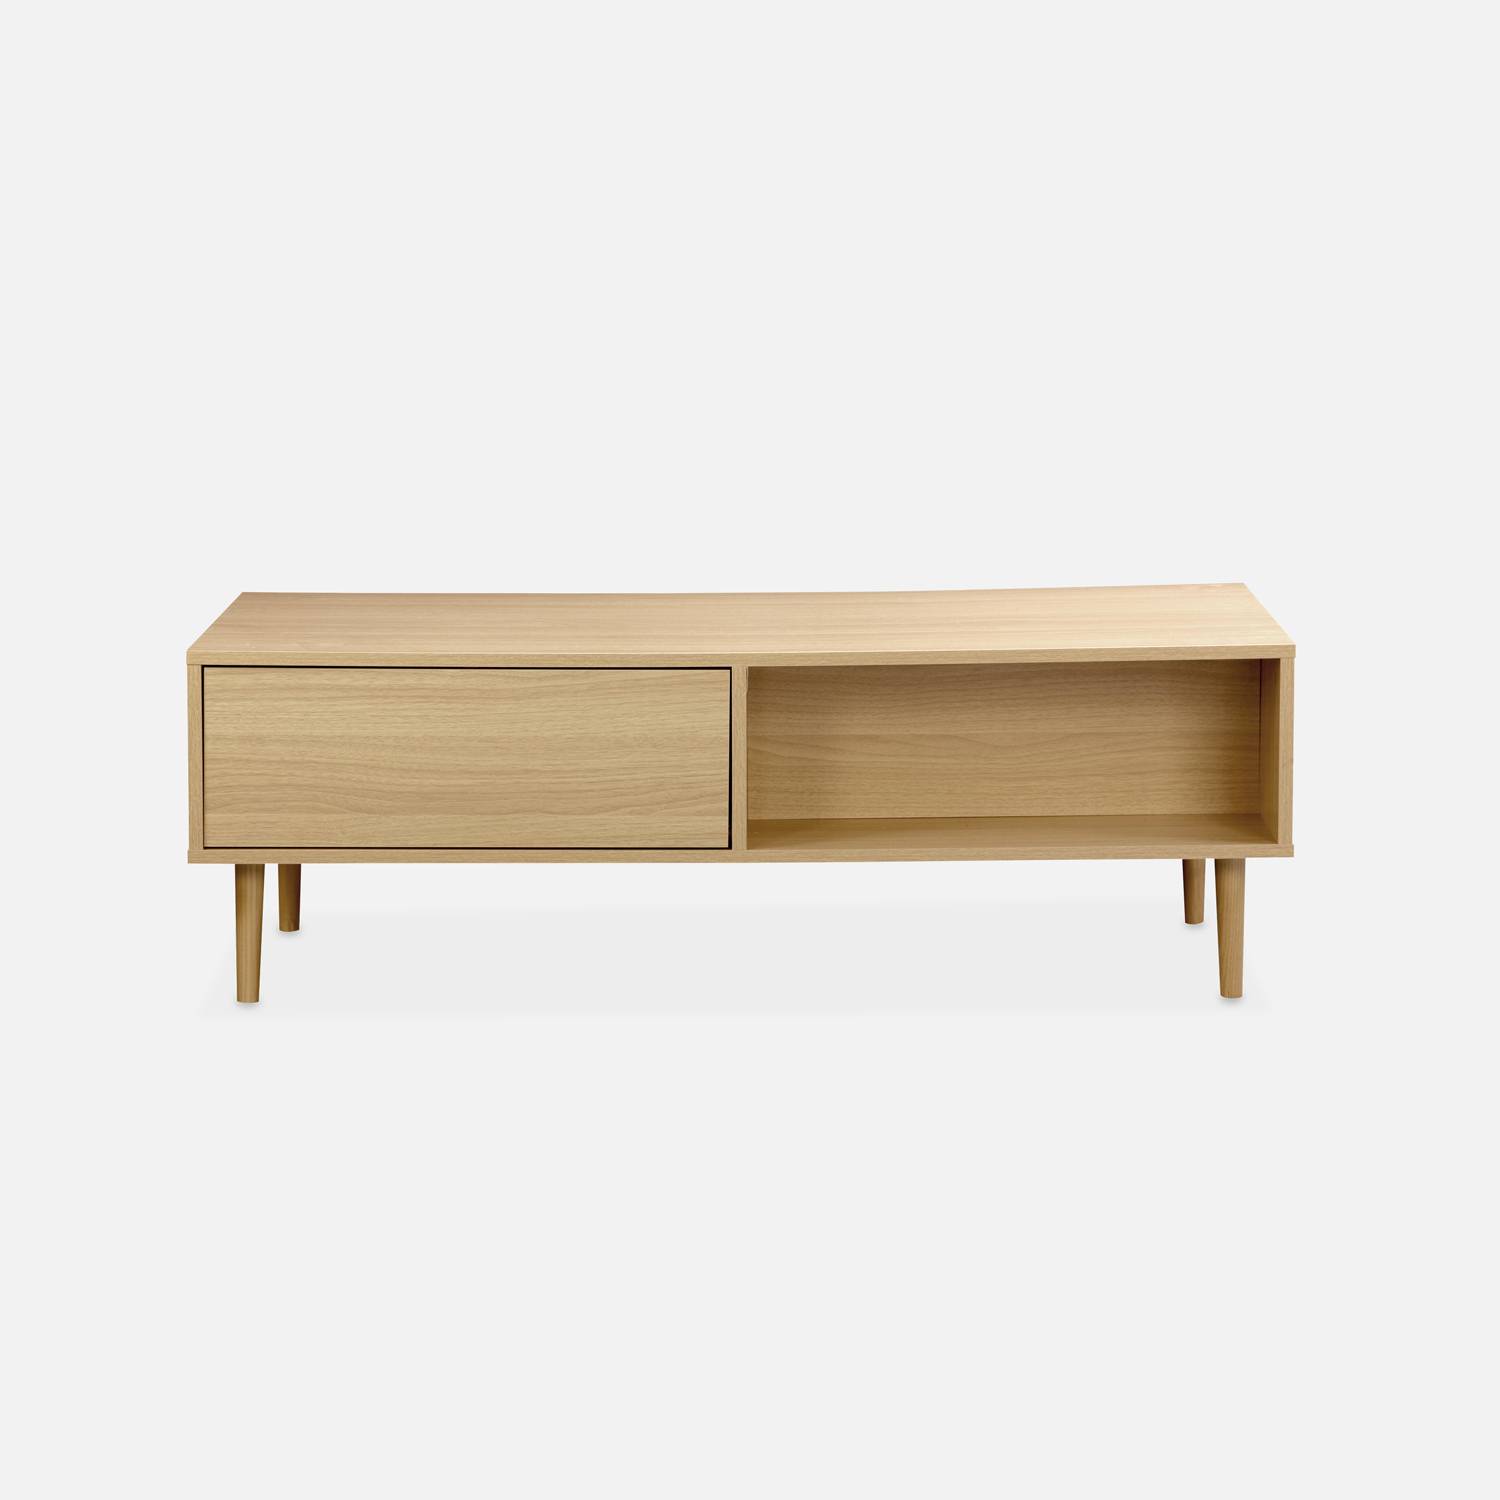 Tavolino in legno decorato - Mika - 2 cassetti, 2 vani portaoggetti, L 120 x L 55 x H 40cm Photo5